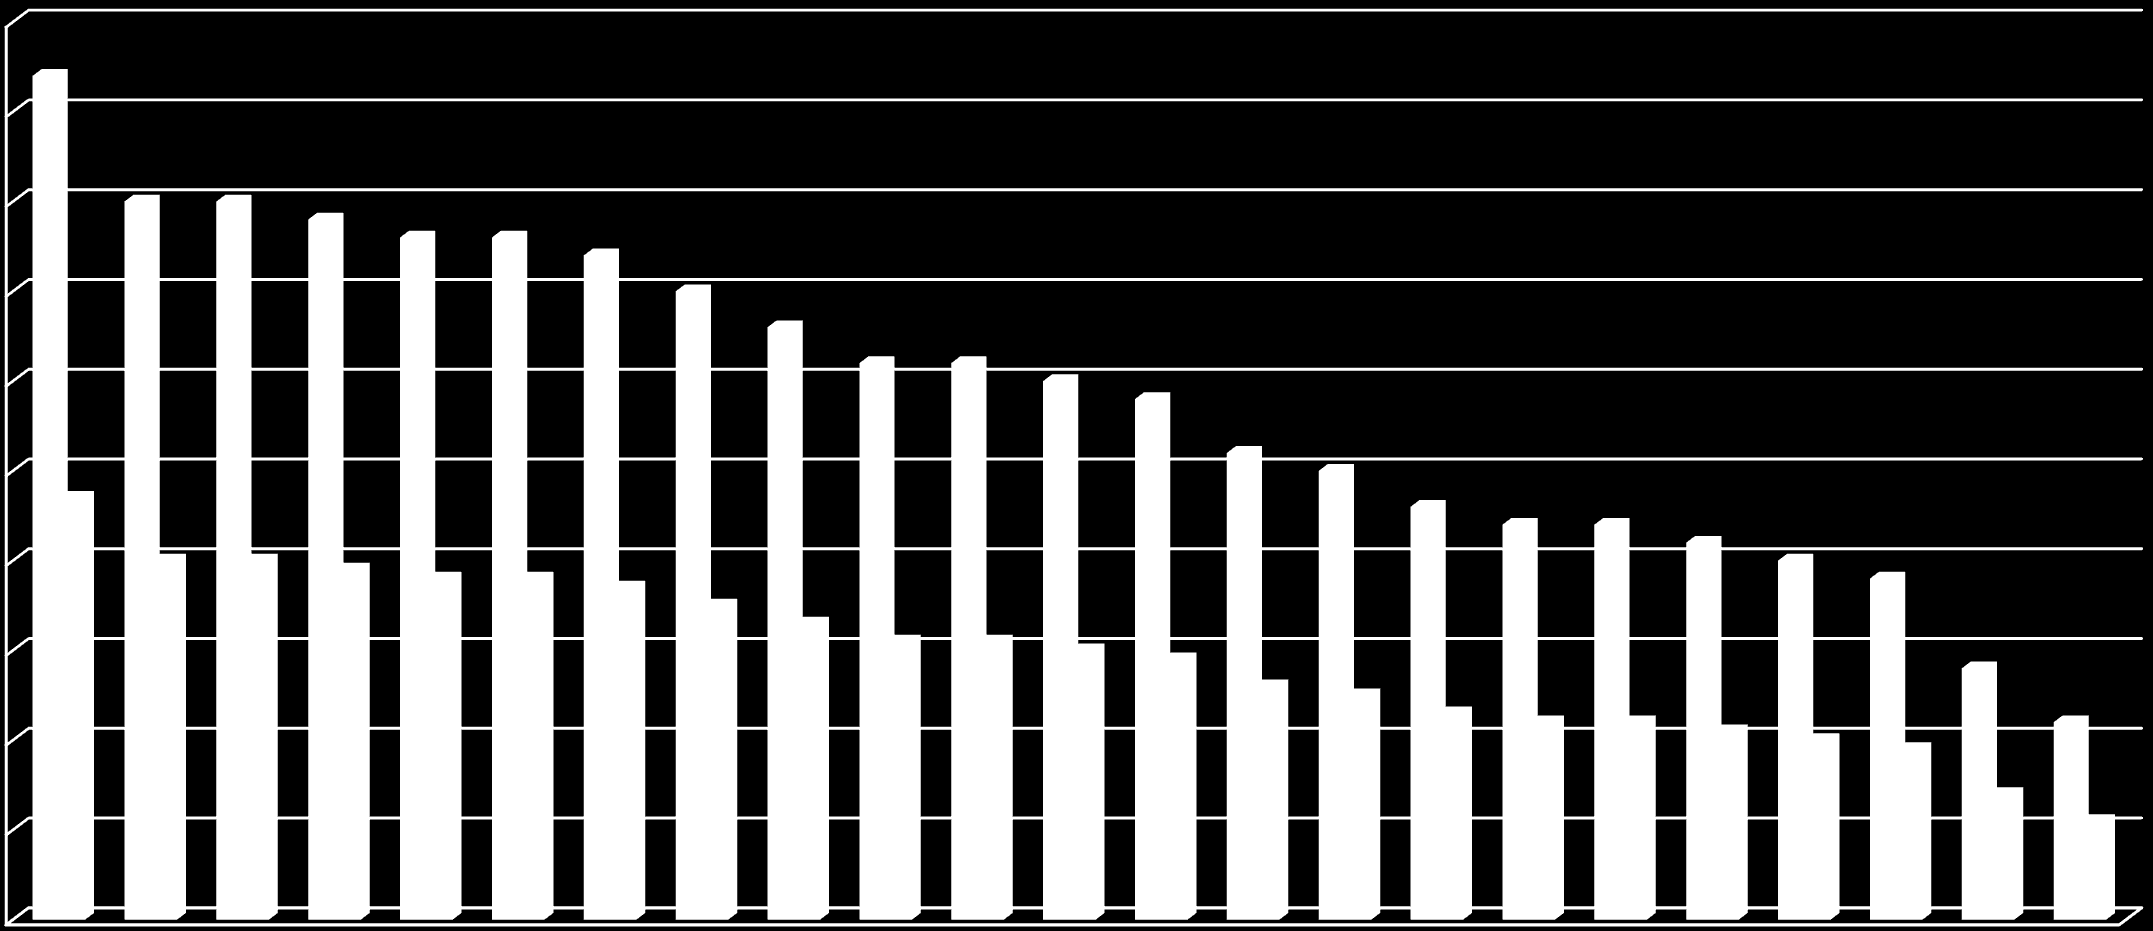 Närvaro säsongen 2015/2016 Ulrik 100 90 80 70 60 57% närvaro 50 40 30 20 % Totalt ggr 10 0 1 2 3 4 5 6 7 8